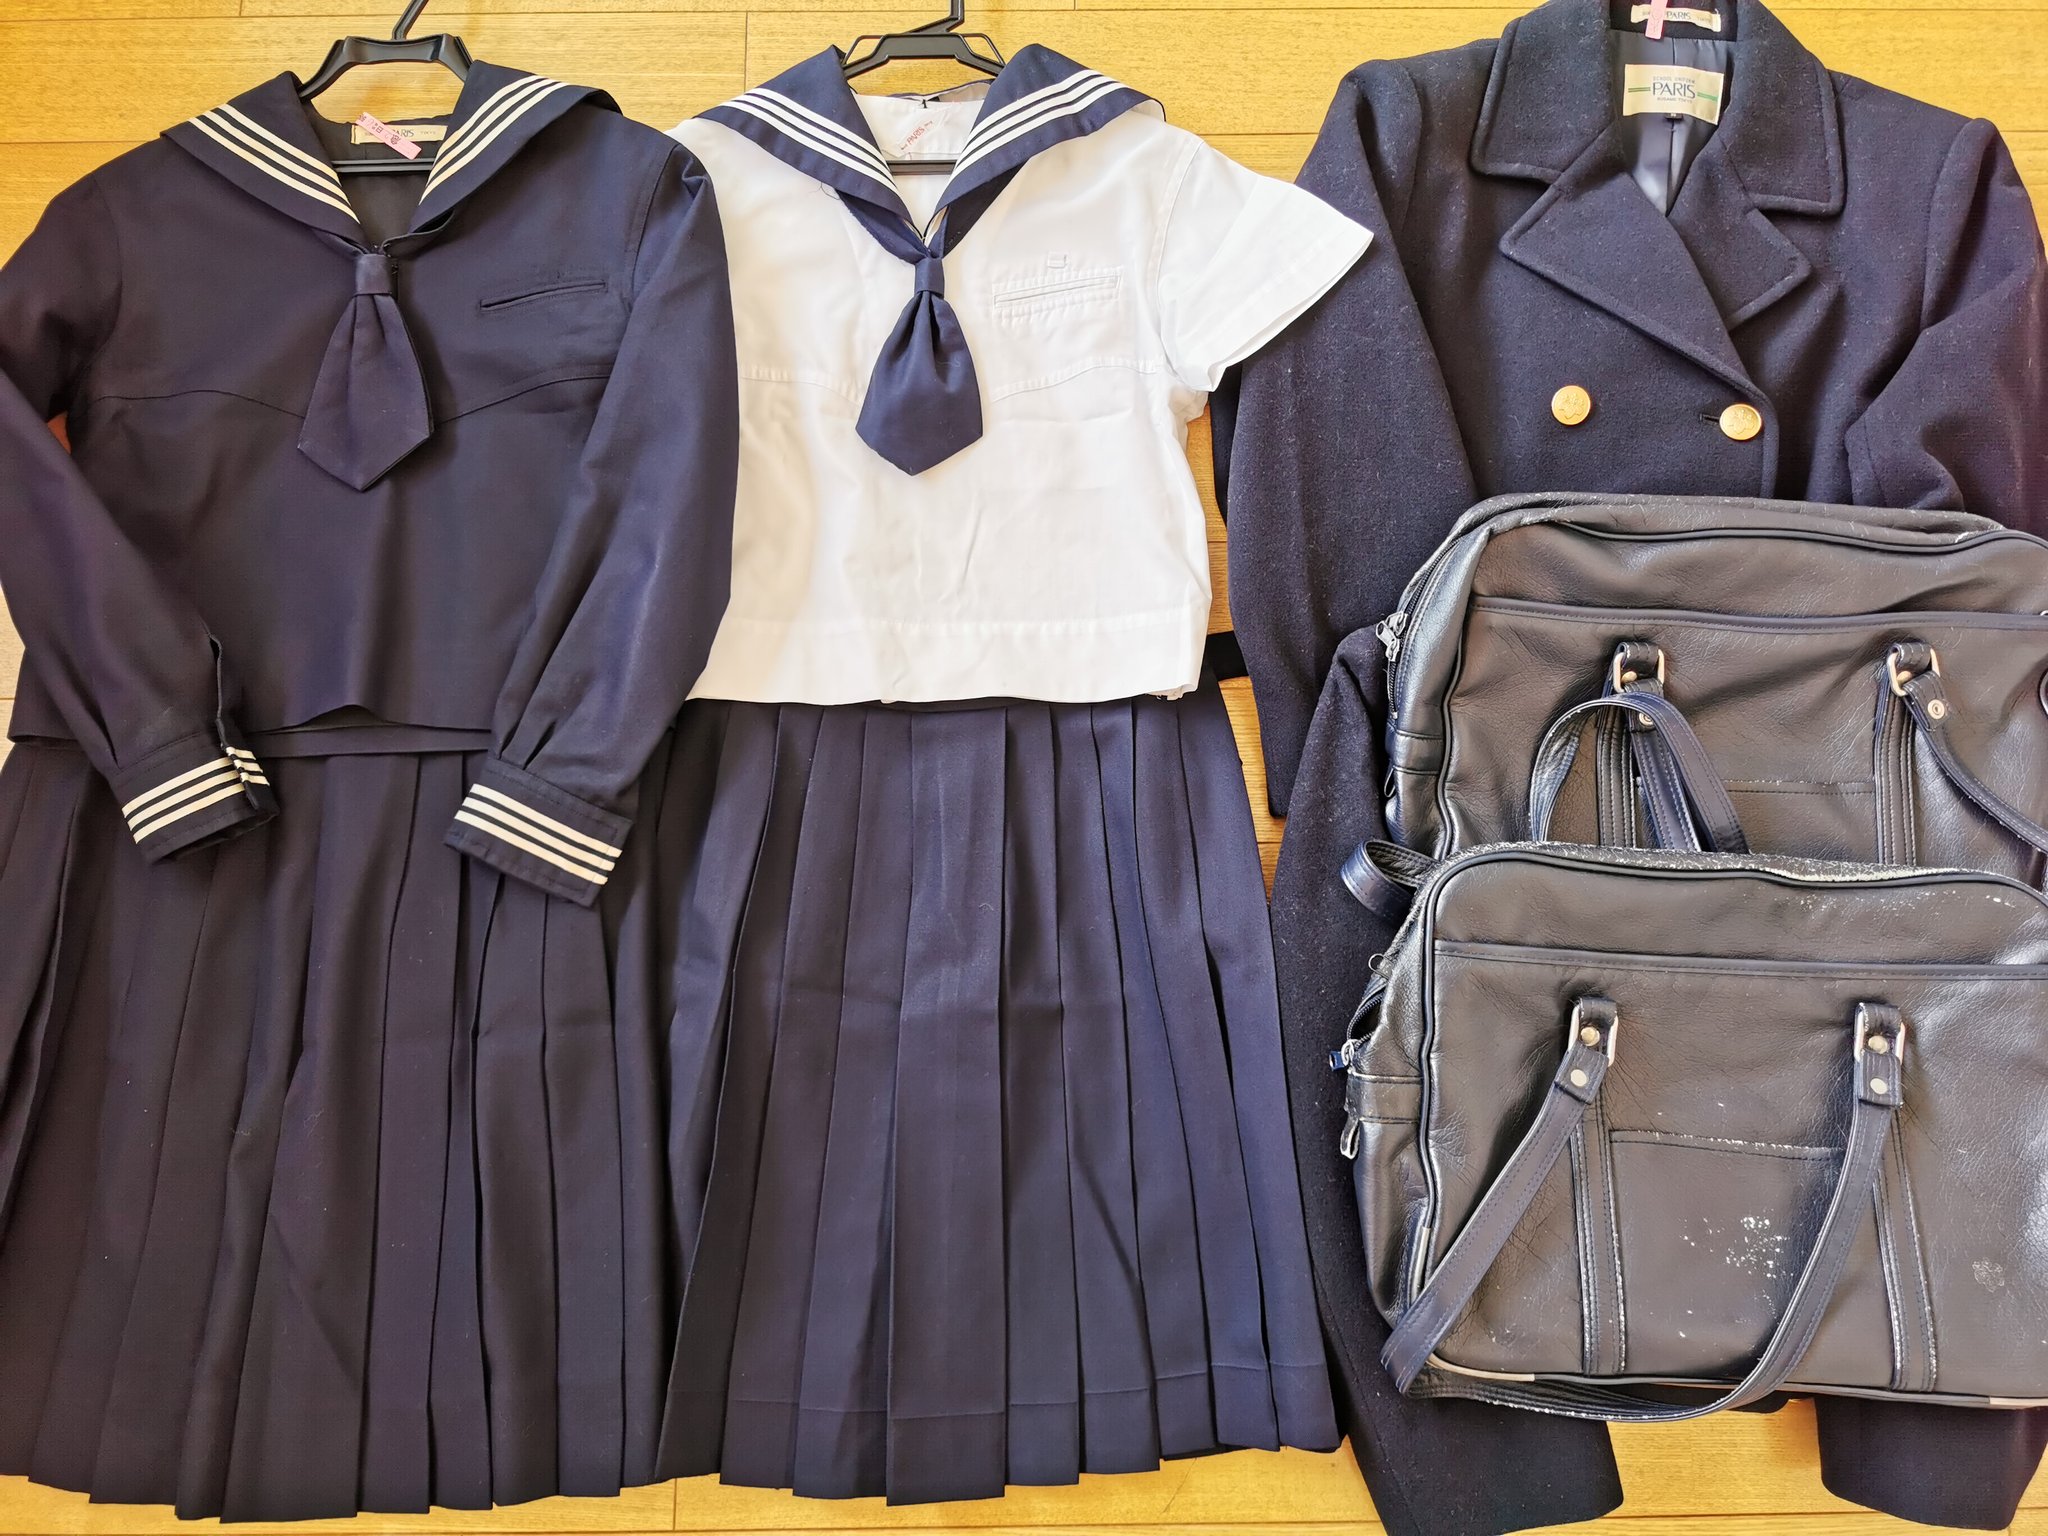 制服買取 買い取り 専門店デジタルウェブ V Twitter 十文字高校 東京都 の制服セットを買い取らせて頂きました 東京では数少ない女子校のセーラー服 襟元にはタイを付けます デジタルウェブへお売り頂きありがとうございました 制服 学生服 制服市場 制服